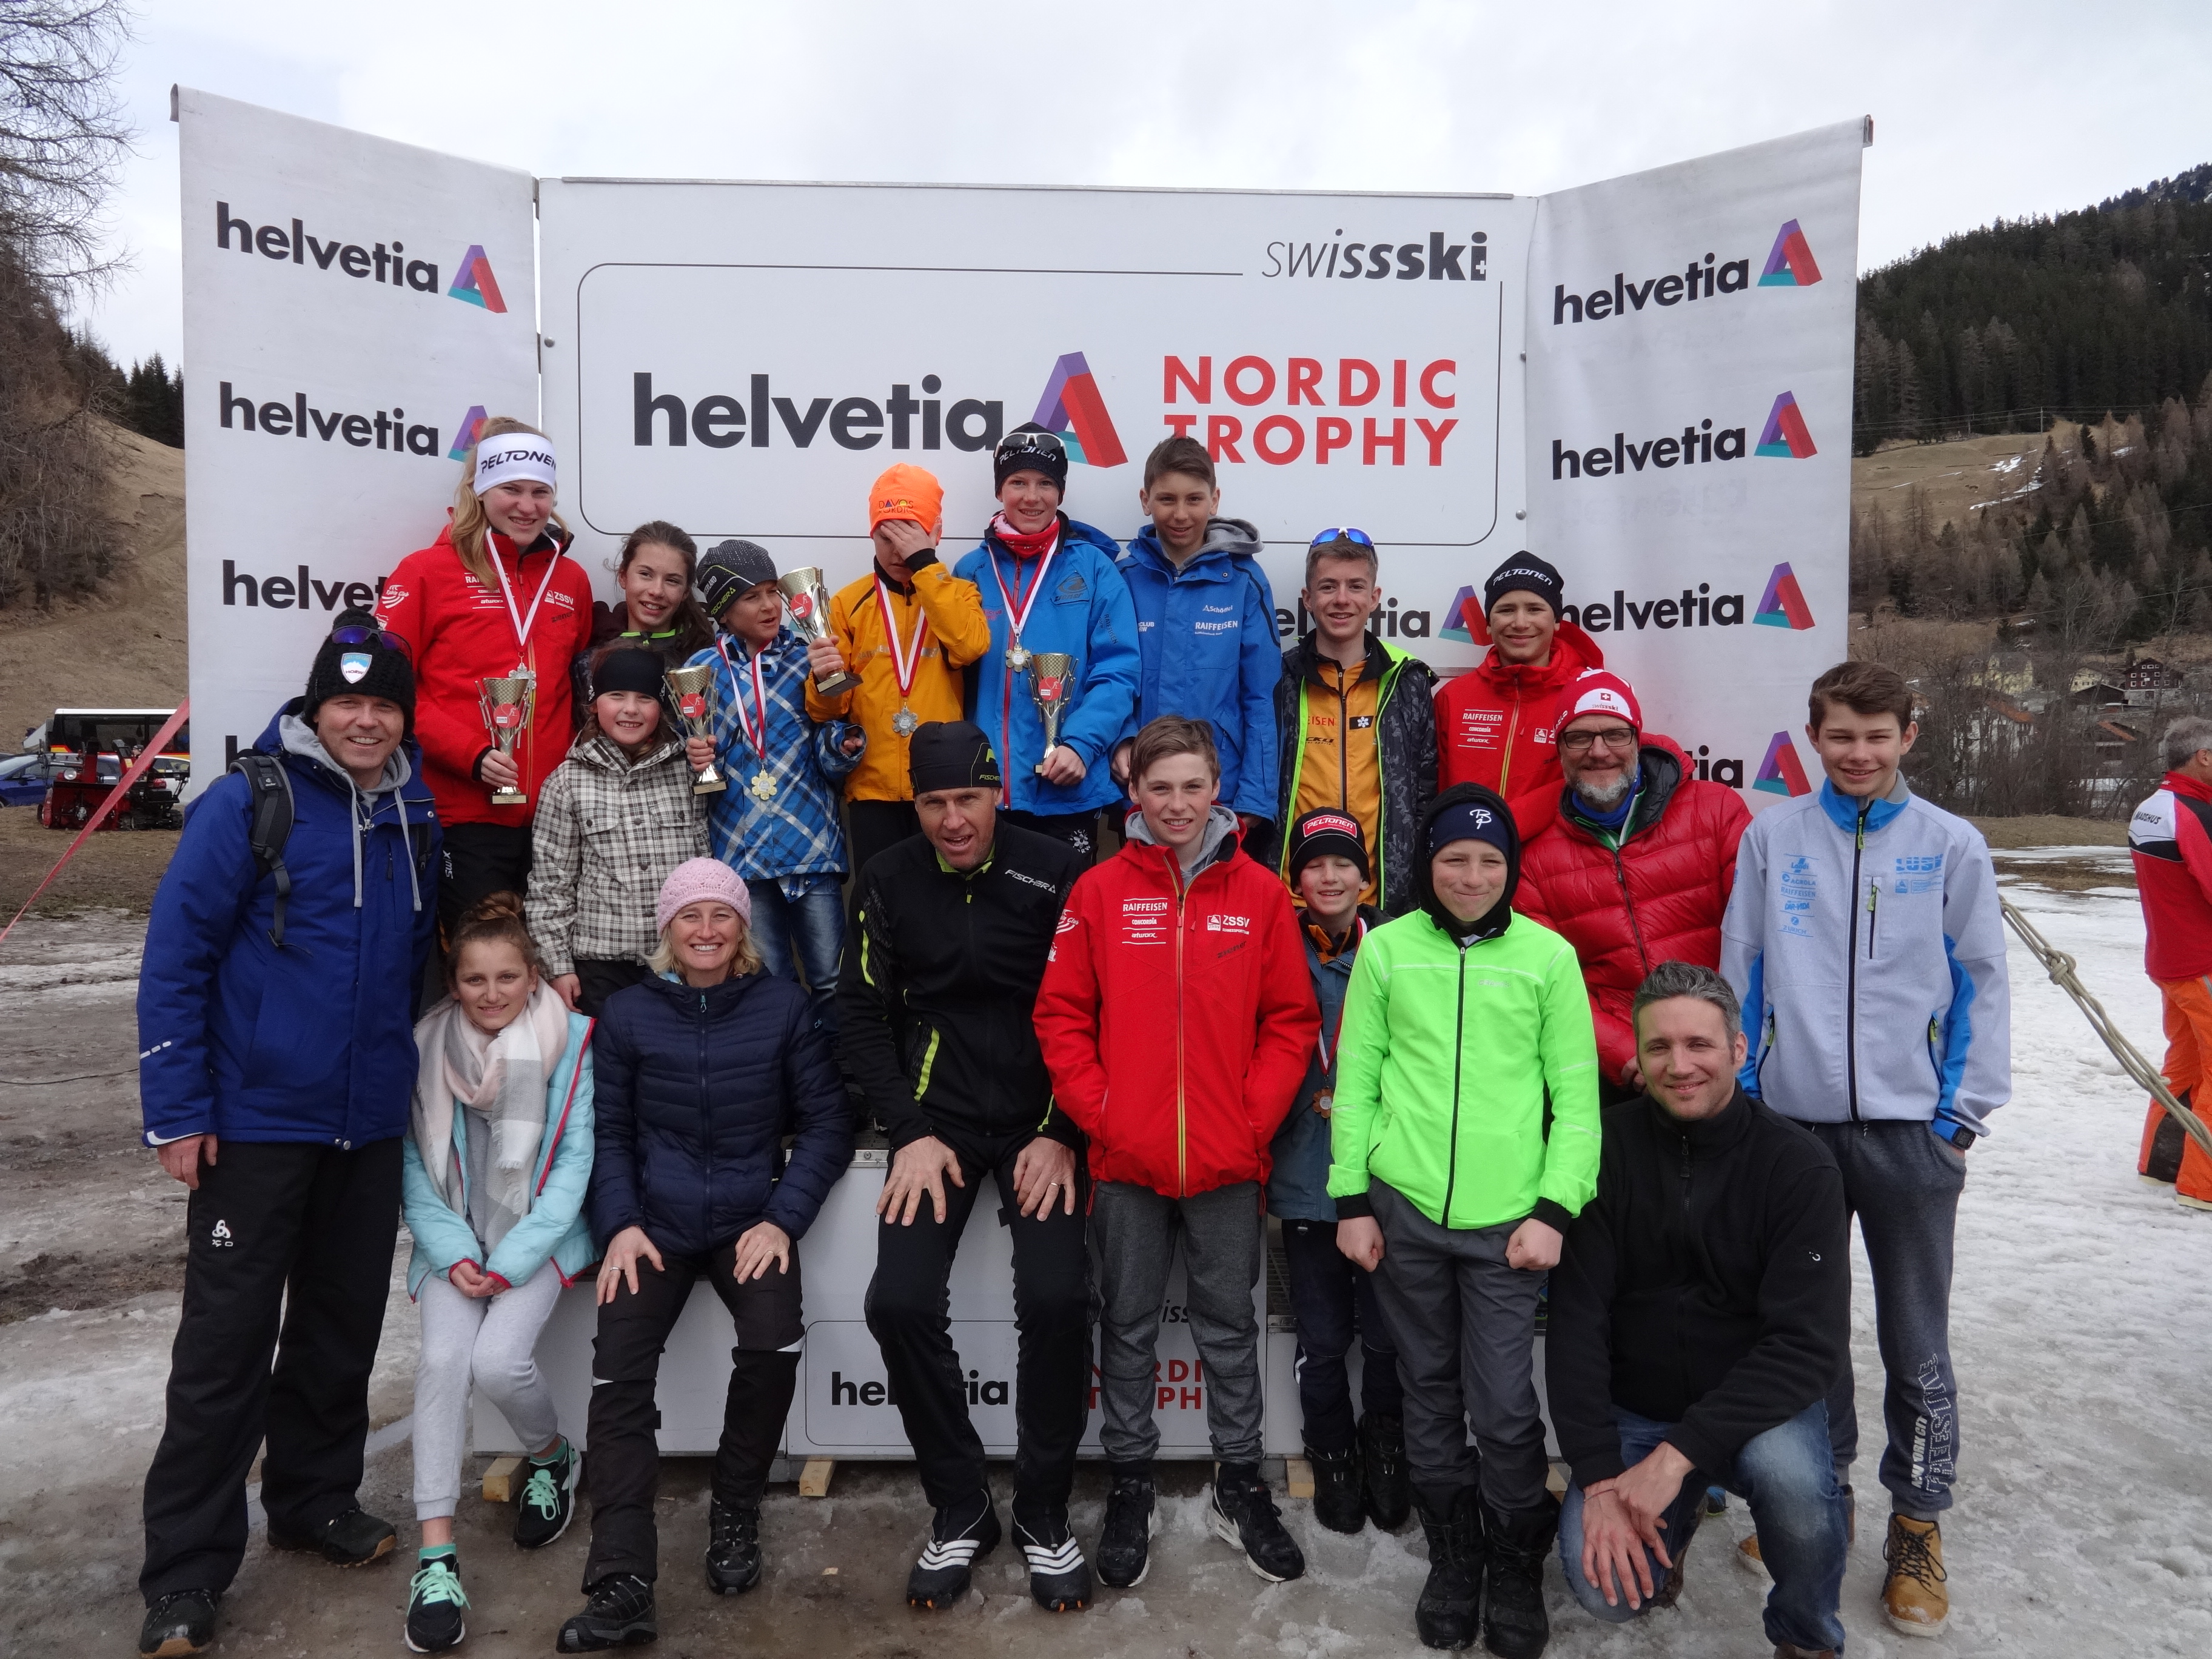 2017-03-18 Helvetia Nordic Trophy - Rona